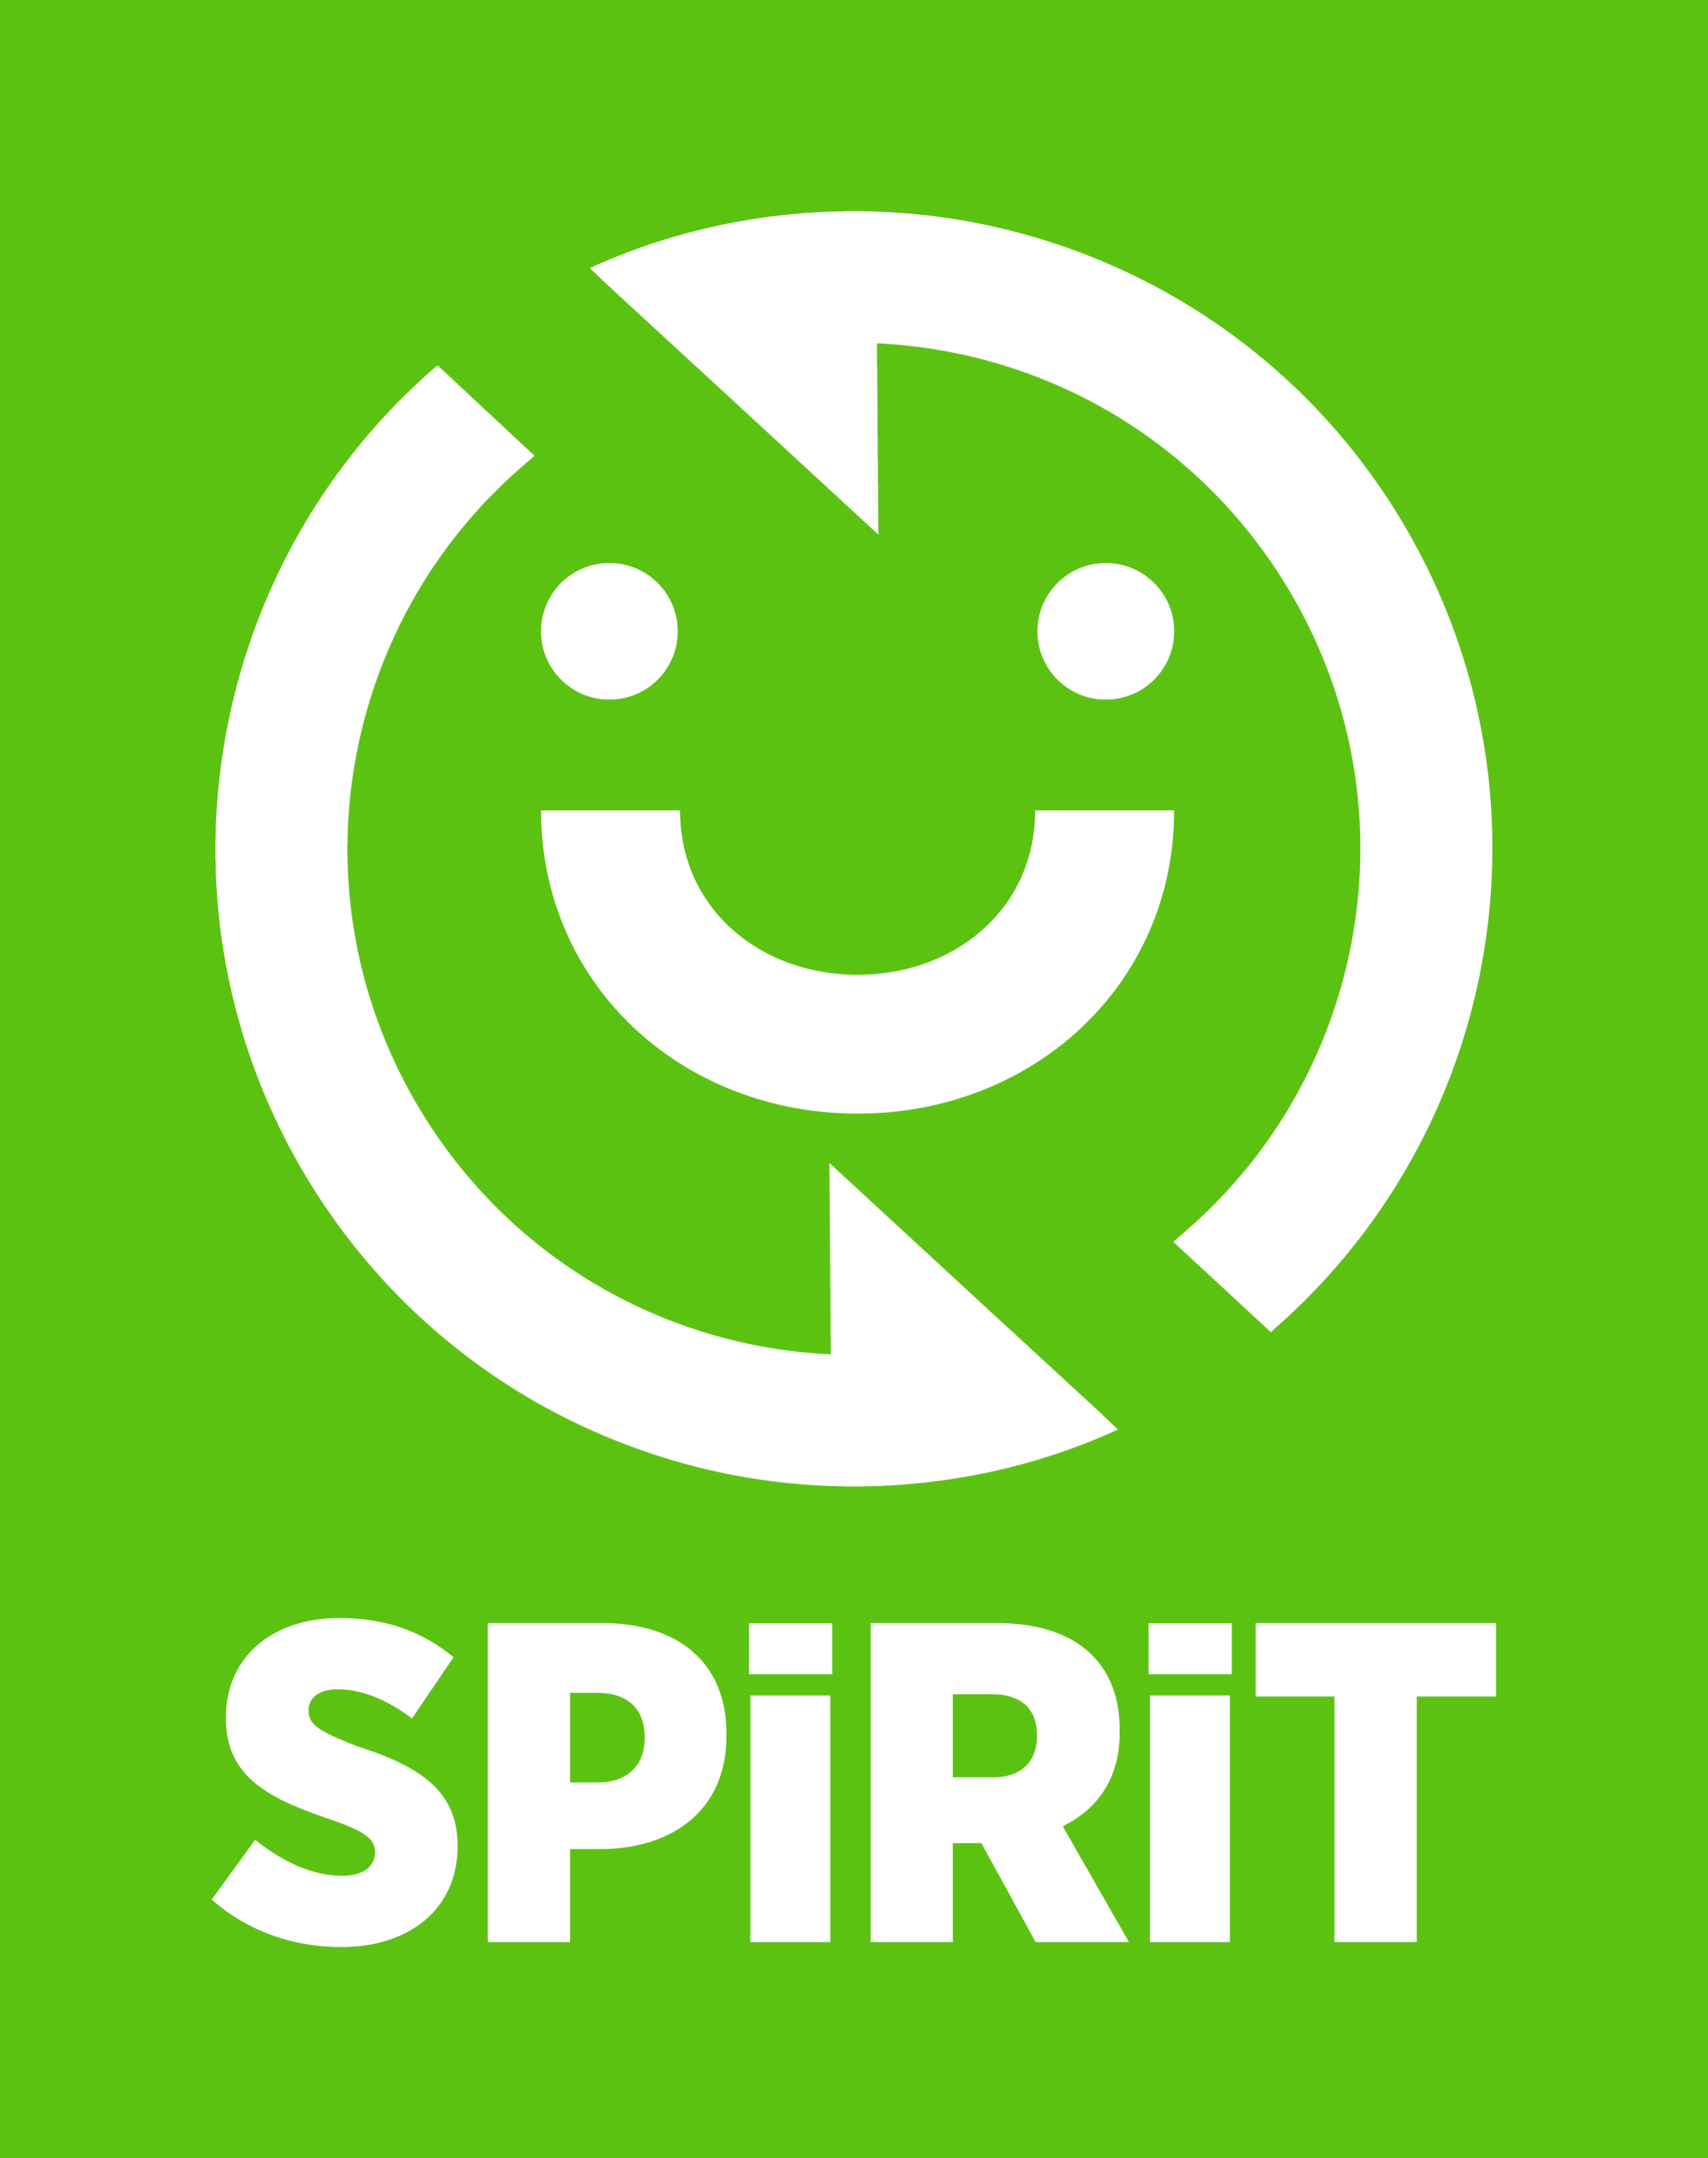 SPIRIT logo green